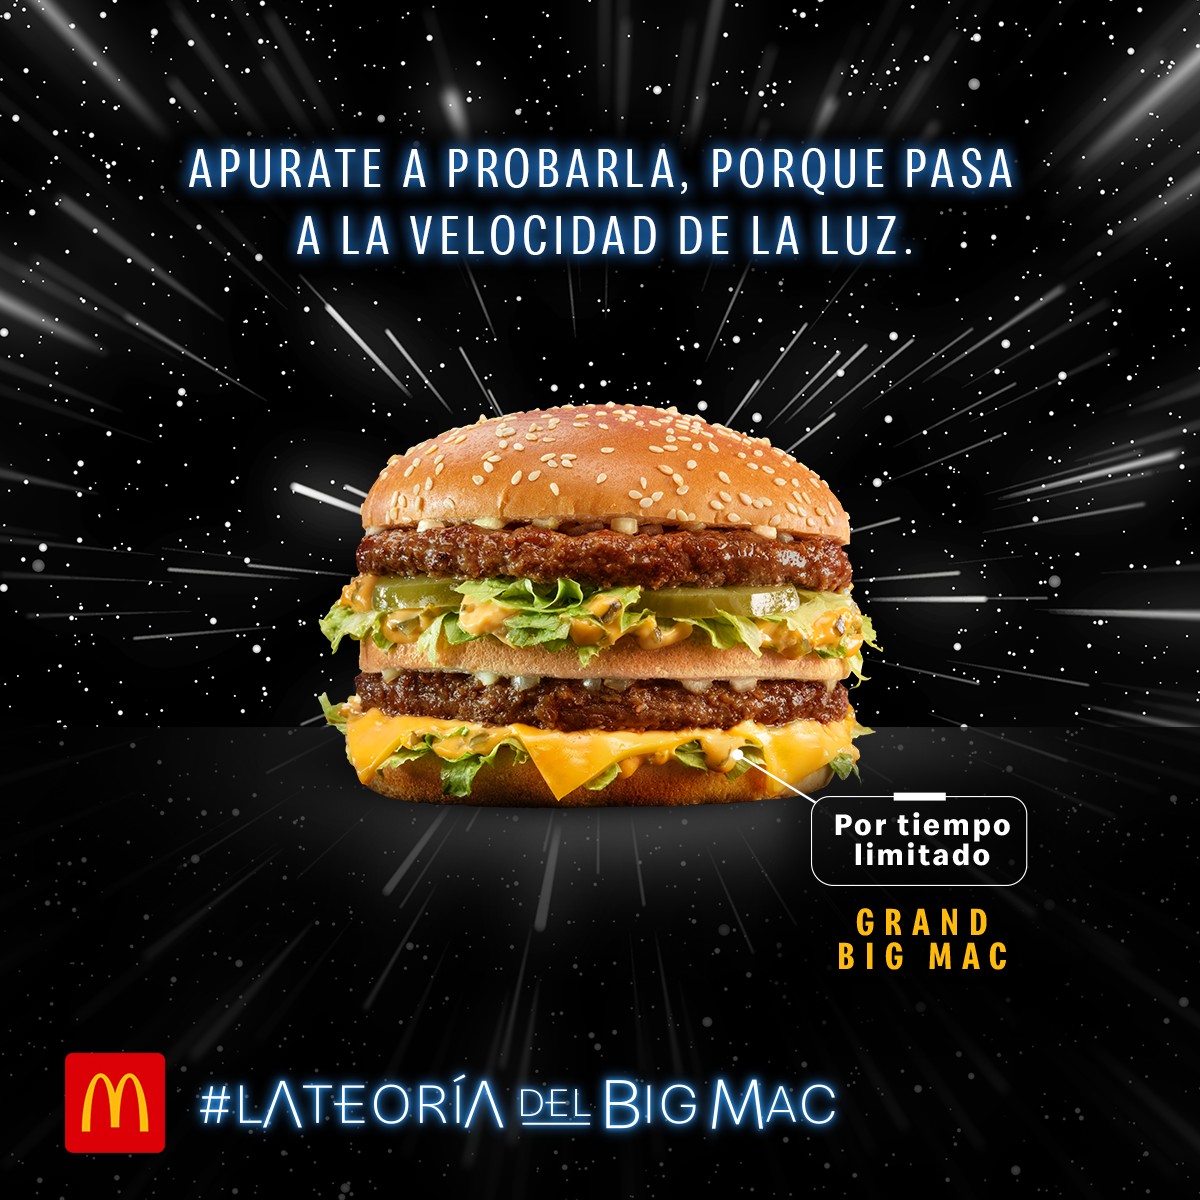 La-teor-a-del-Big-Mac-2.jpg